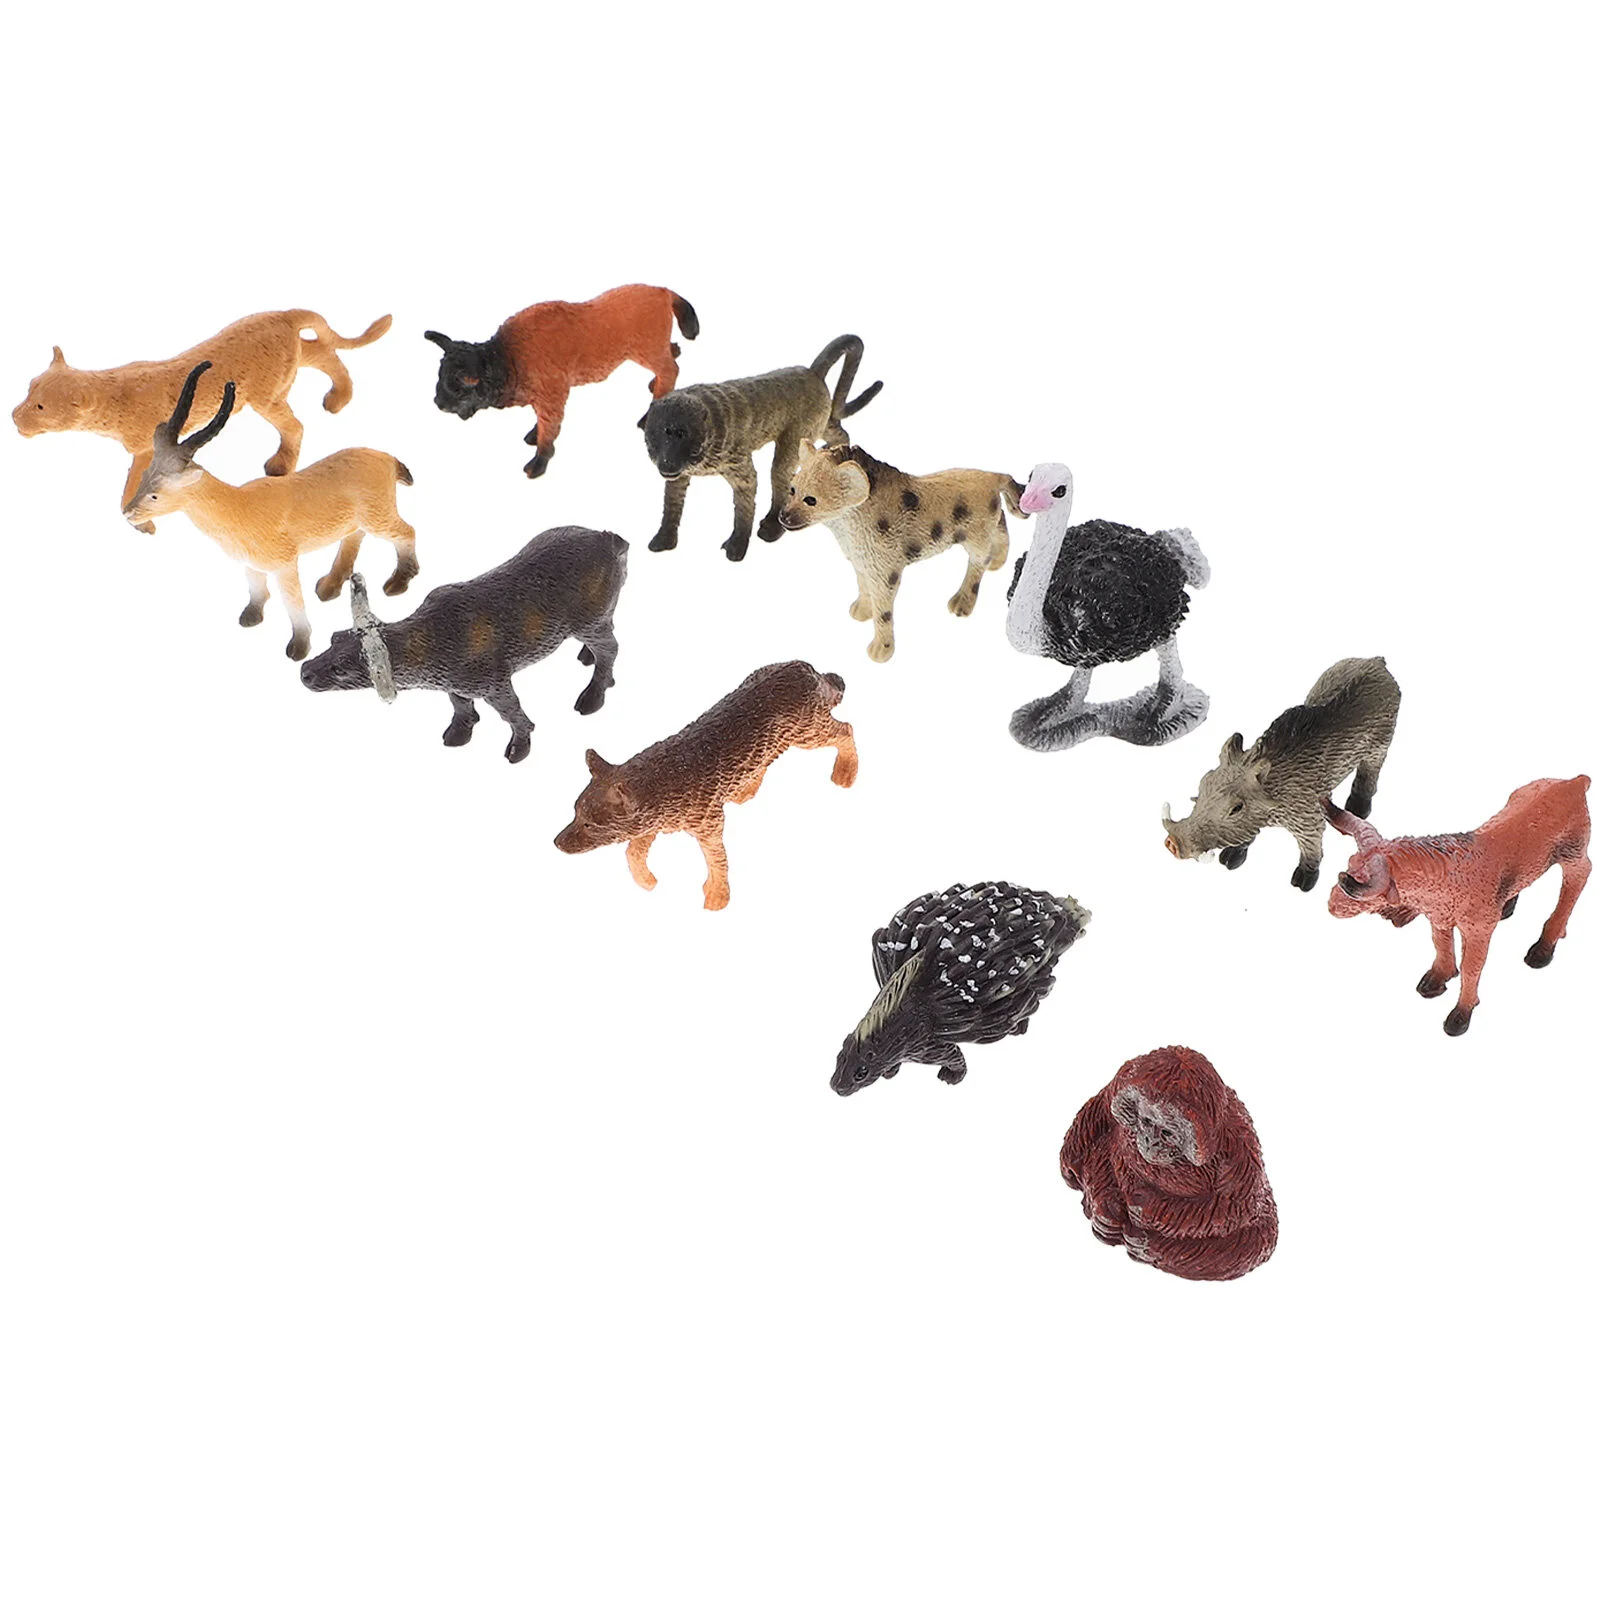 

Африканская миниатюрная фигурка диких животных, искусственная игрушка в форме животных, модель леса, статуэтка, украшение